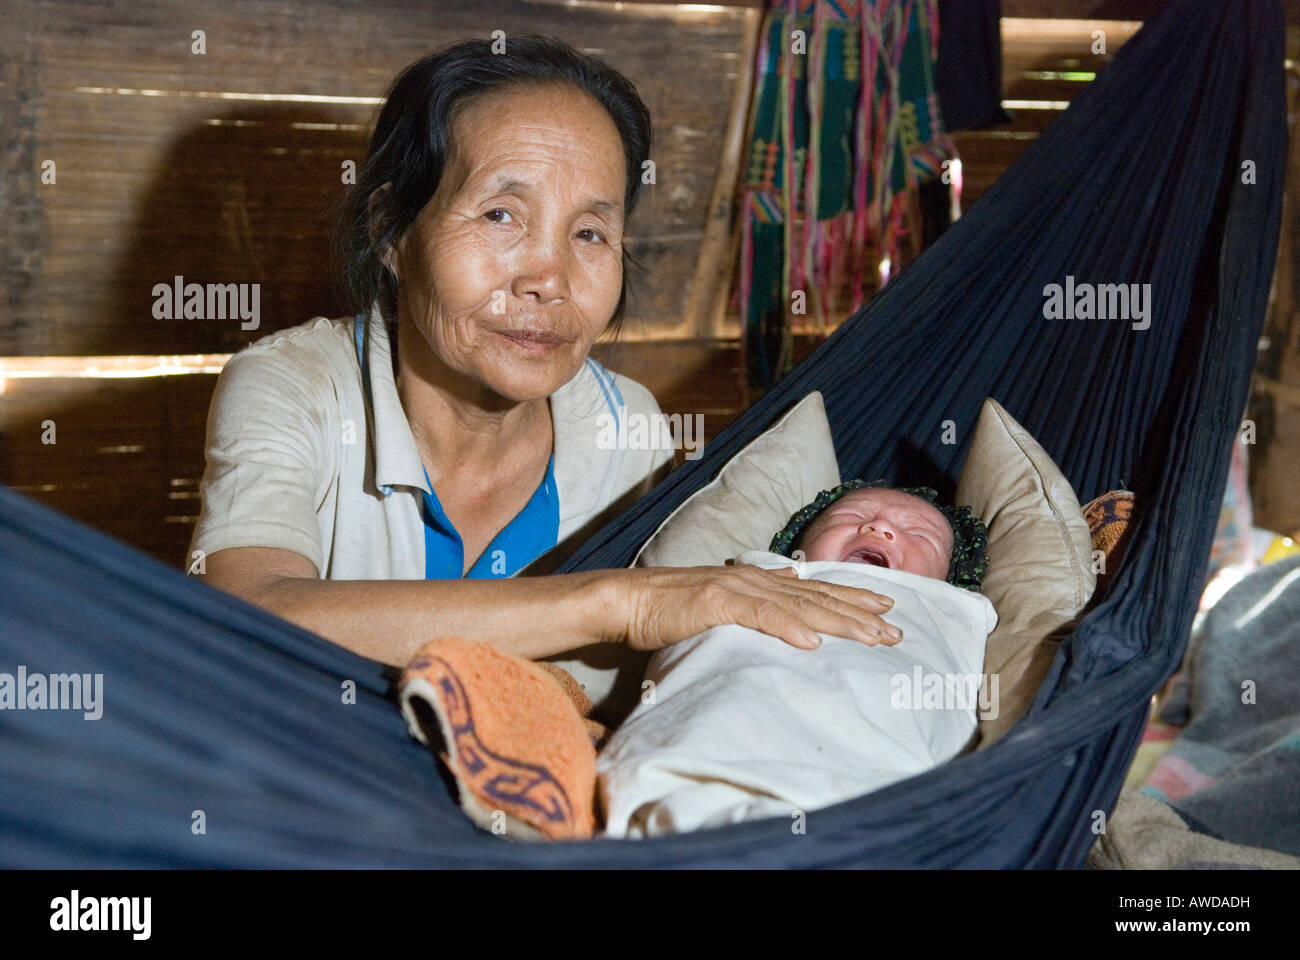 Midwive dandling bébé dans un camp de réfugiés, les buttes ei tu ets, PDI-région en bordure de la Thaïlande près de Mae Sariang, Birma Banque D'Images